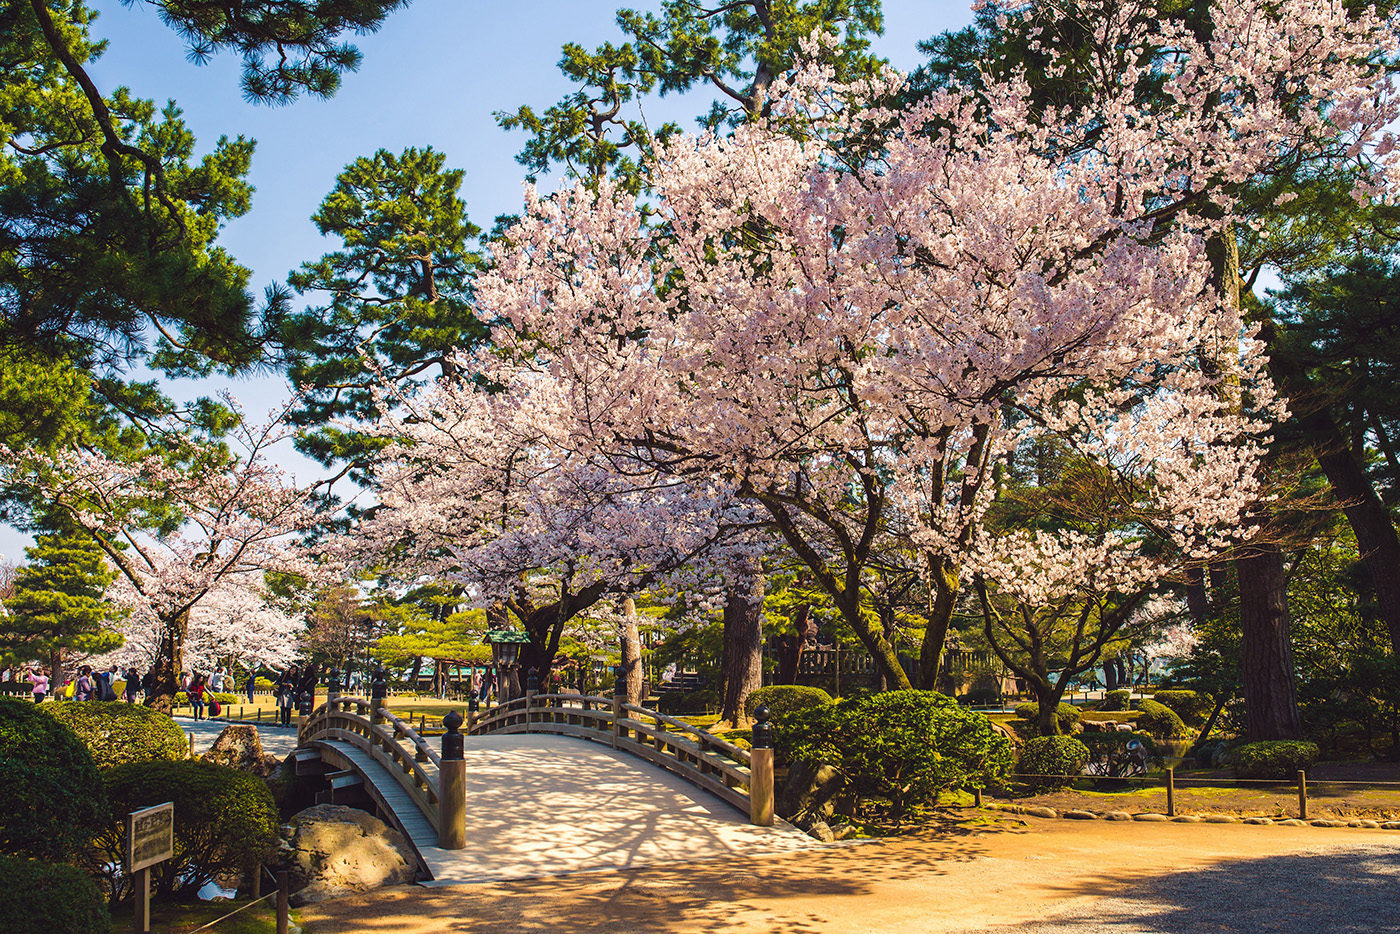 Admirez les cerisiers en fleurs, les pavillons de thé et les bosquets d’anciens arbres noueux de Kanazawa